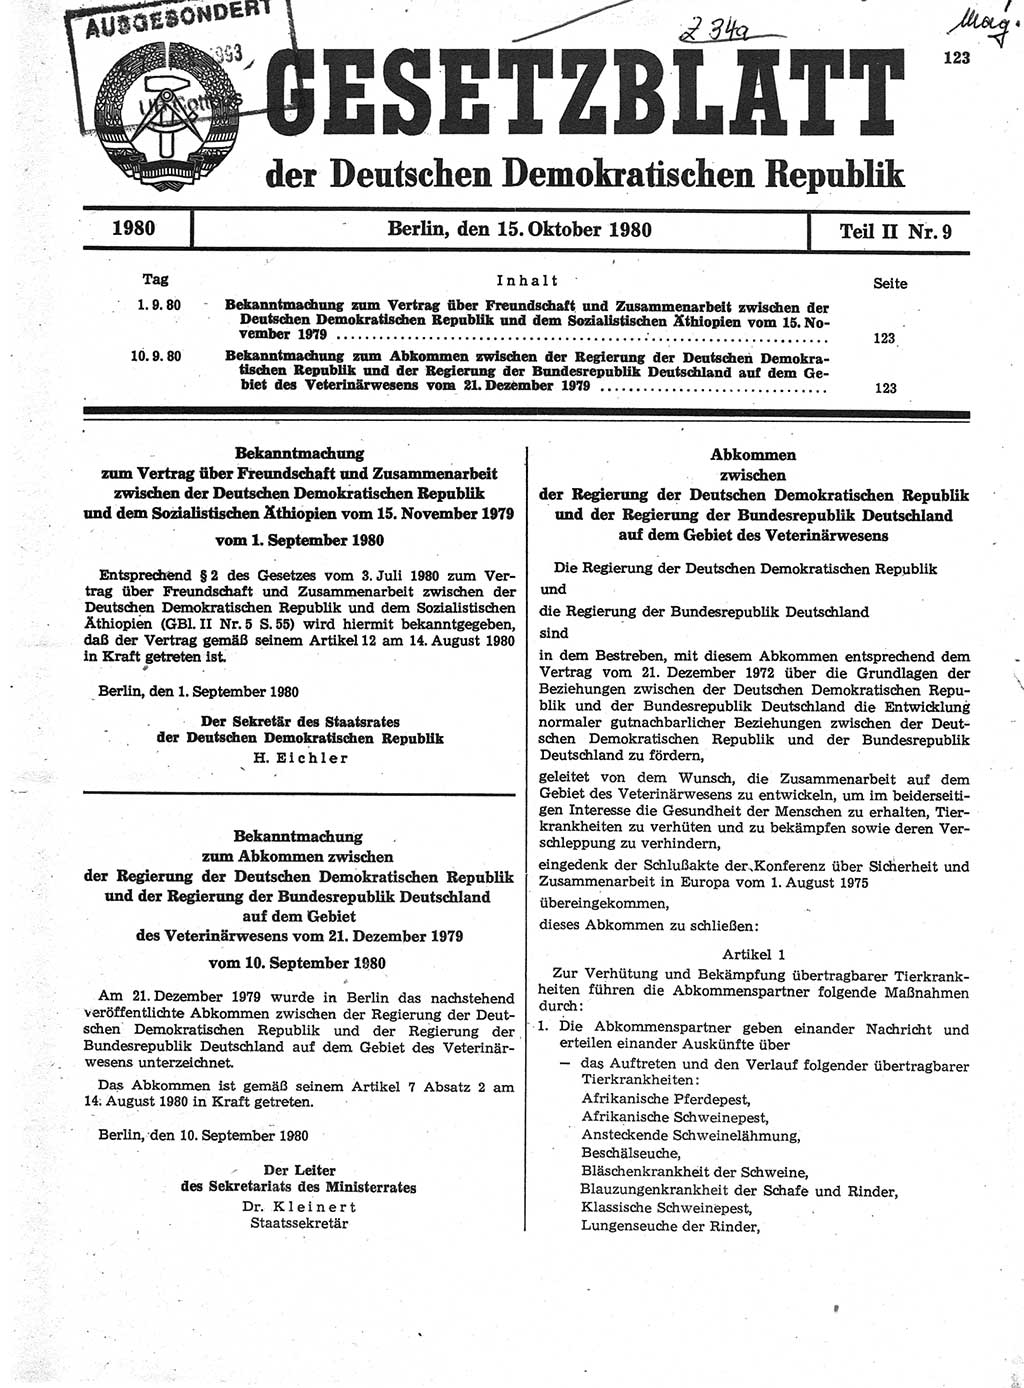 Gesetzblatt (GBl.) der Deutschen Demokratischen Republik (DDR) Teil ⅠⅠ 1980, Seite 123 (GBl. DDR ⅠⅠ 1980, S. 123)